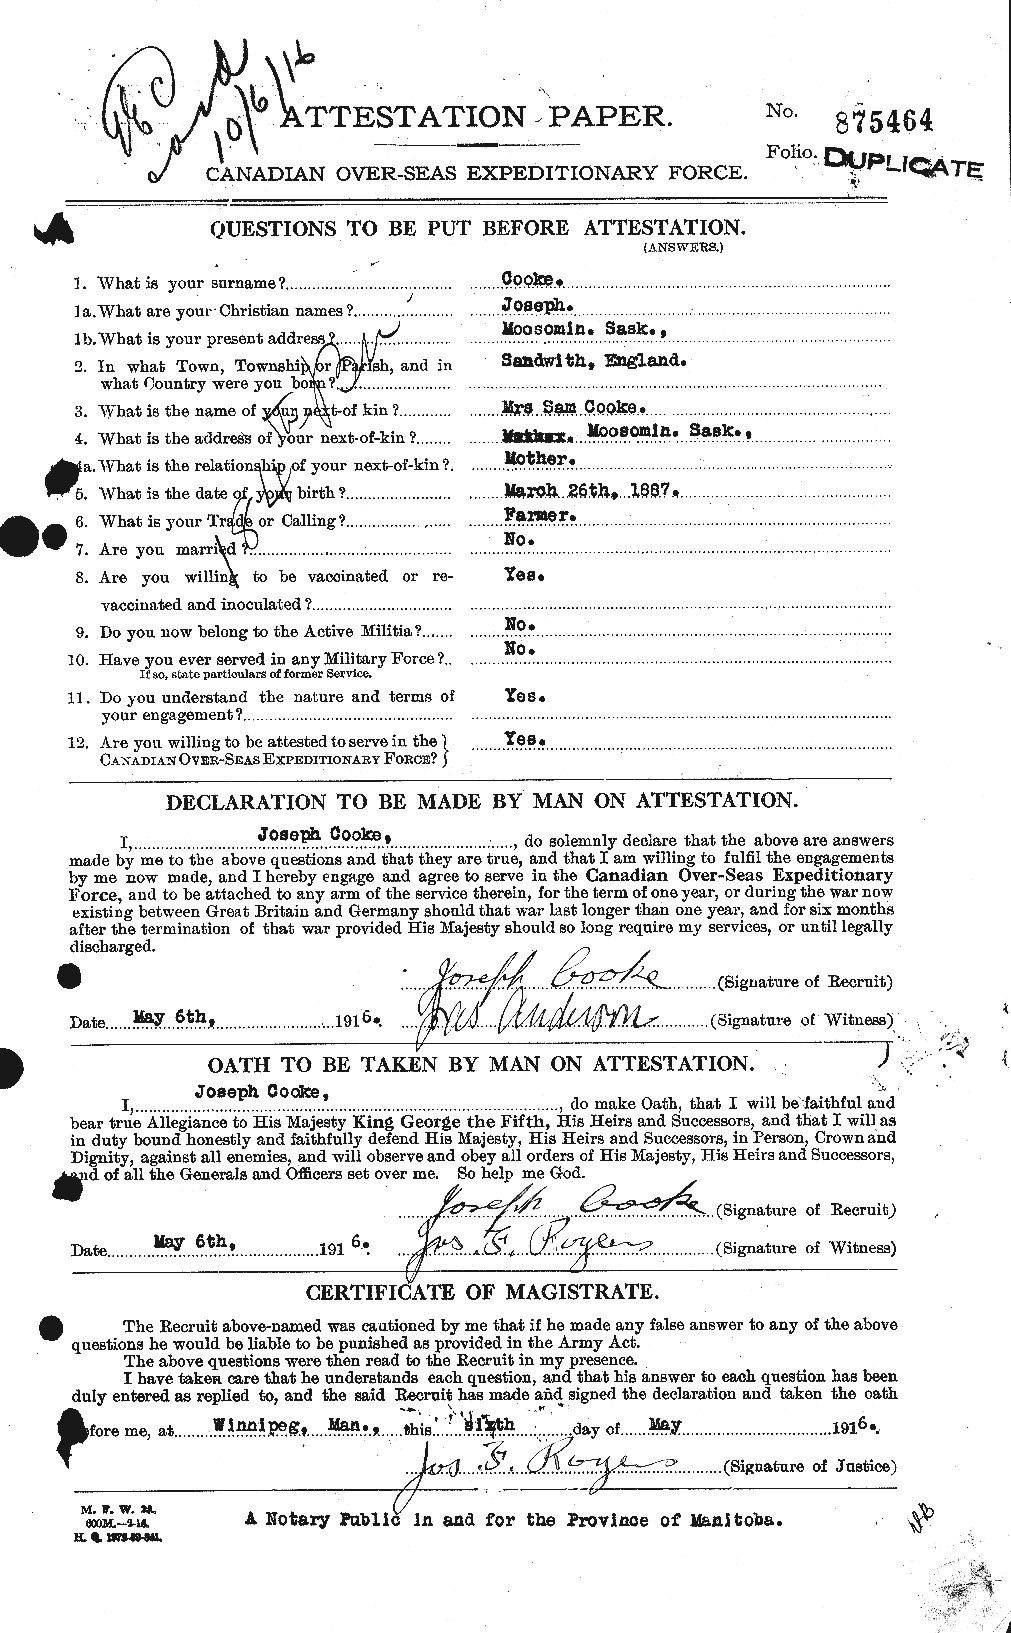 Dossiers du Personnel de la Première Guerre mondiale - CEC 075925a